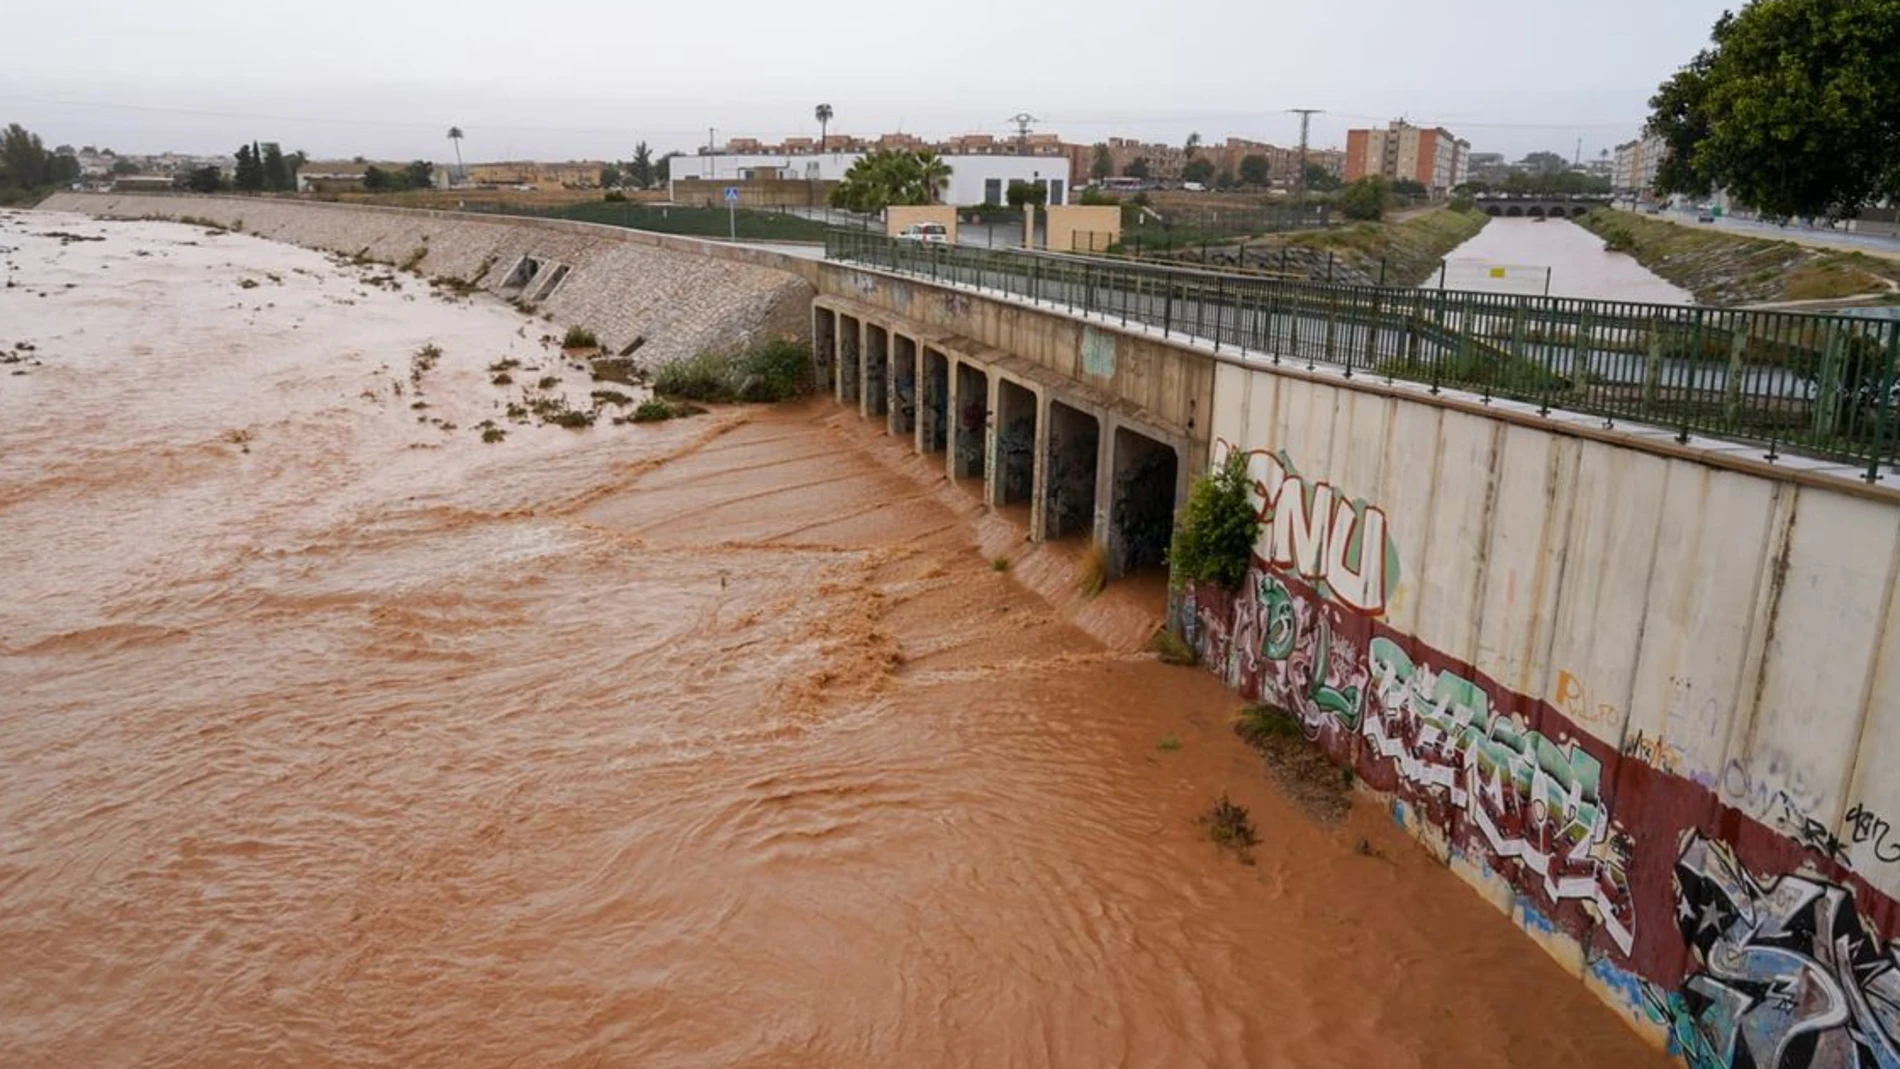 Precipitaciones de más de 100 litros provocan una decena de intervenciones, inundaciones y cortes de carretera en Cartagena. 